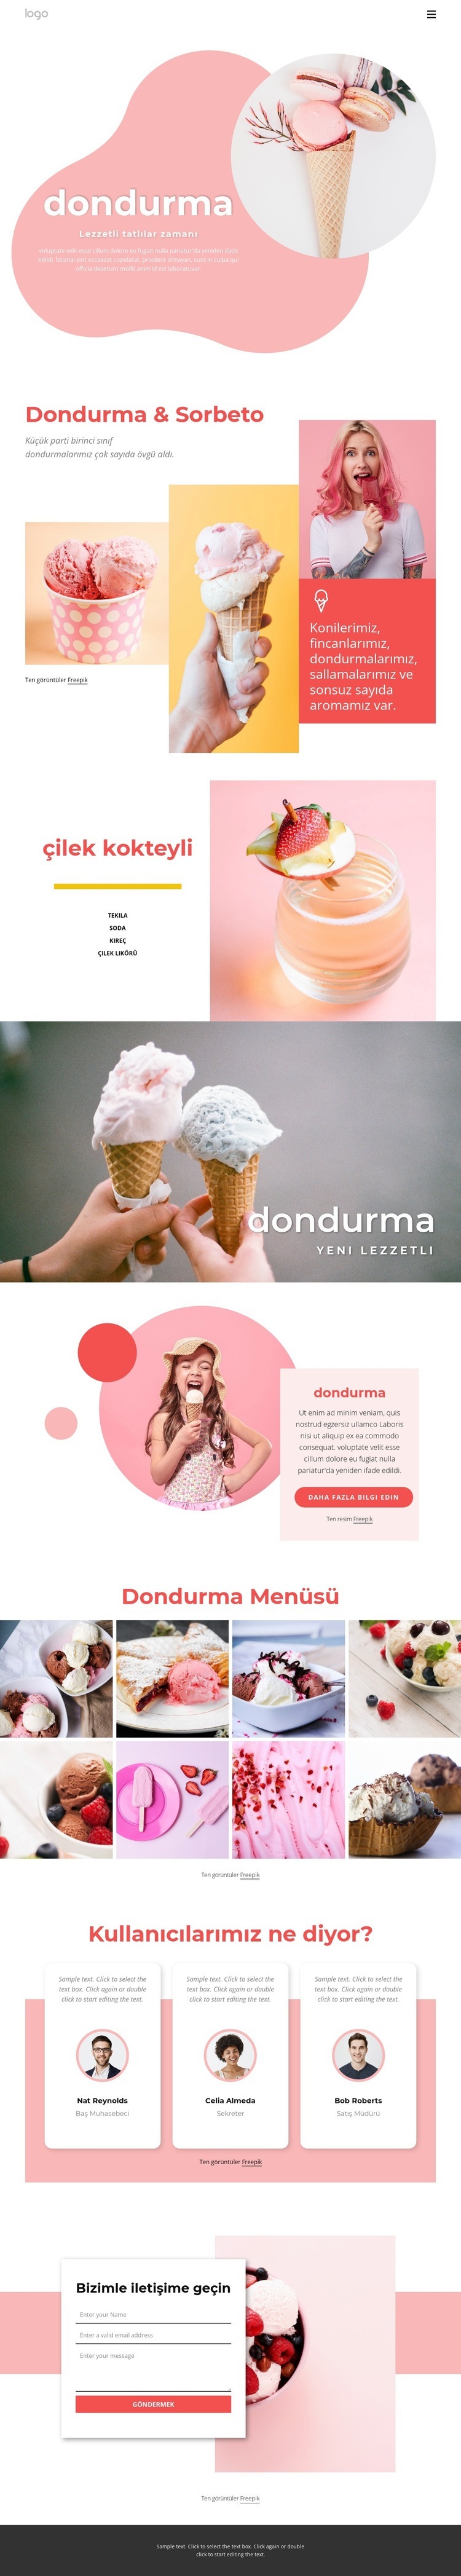 Dondurma ve Ffrozen yoğurt Web sitesi tasarımı